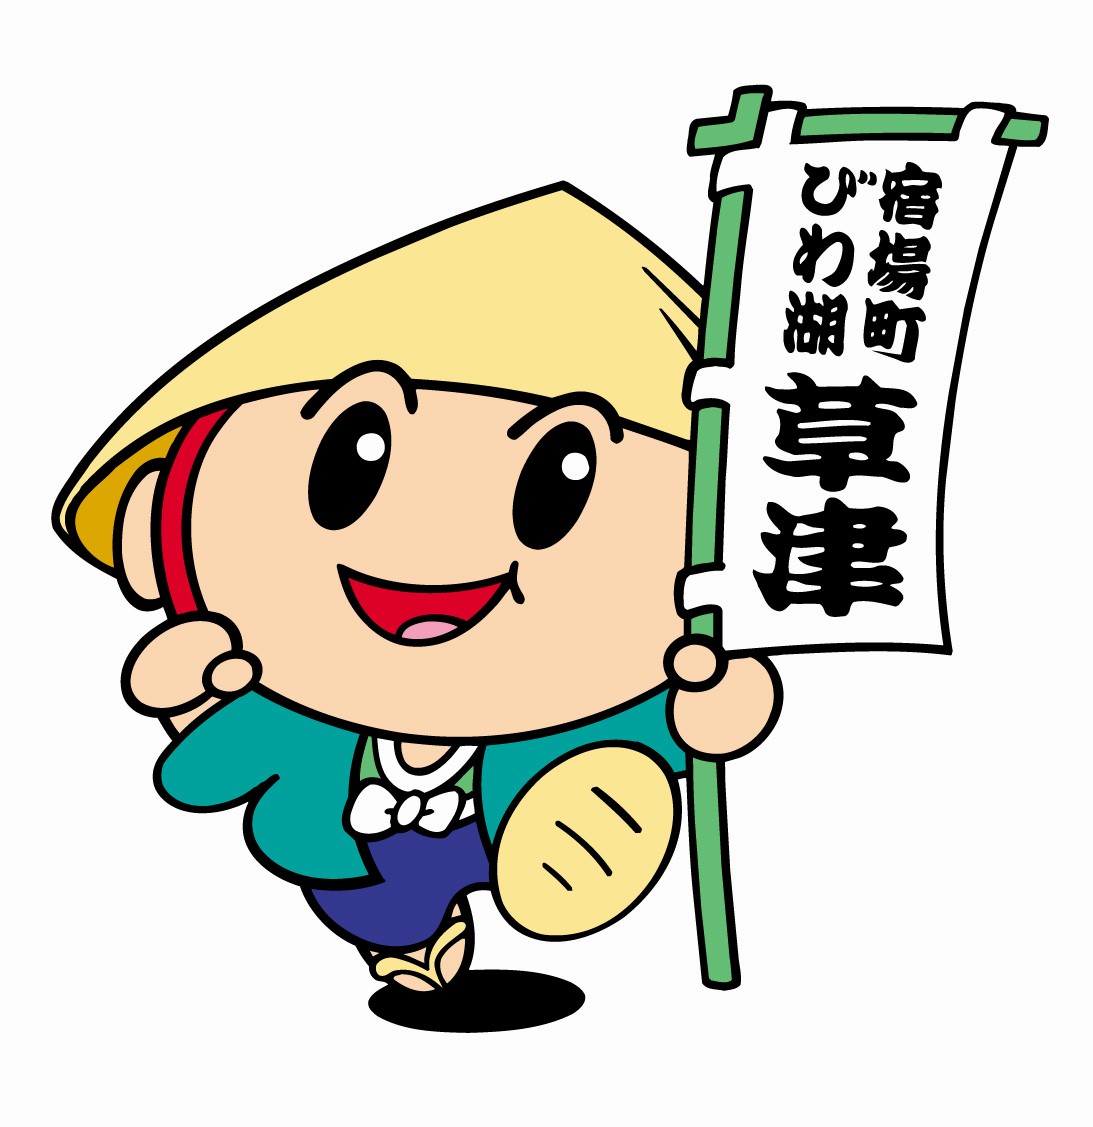 草津のマスコットキャラクター たびまる 公式 Hotel21 滋賀県草津市の居心地の良い小さなホテル ビジネス 観光に